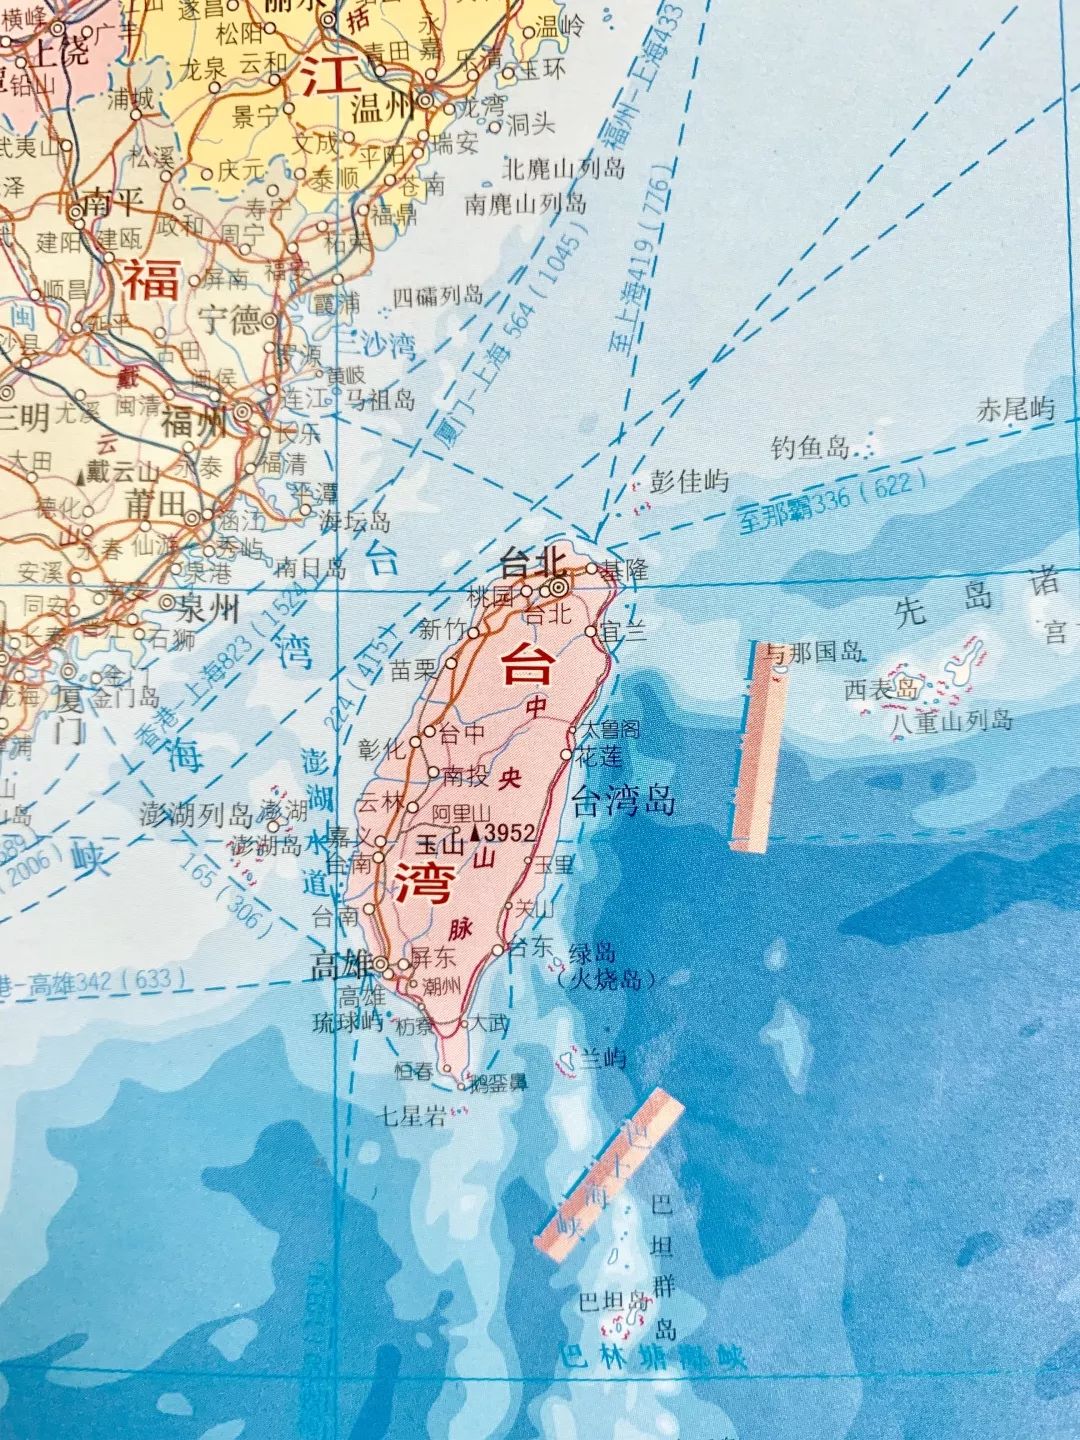 图甲为台湾岛等高线和城市分布图,图丙,图丁分别为高雄市和菏泽市的